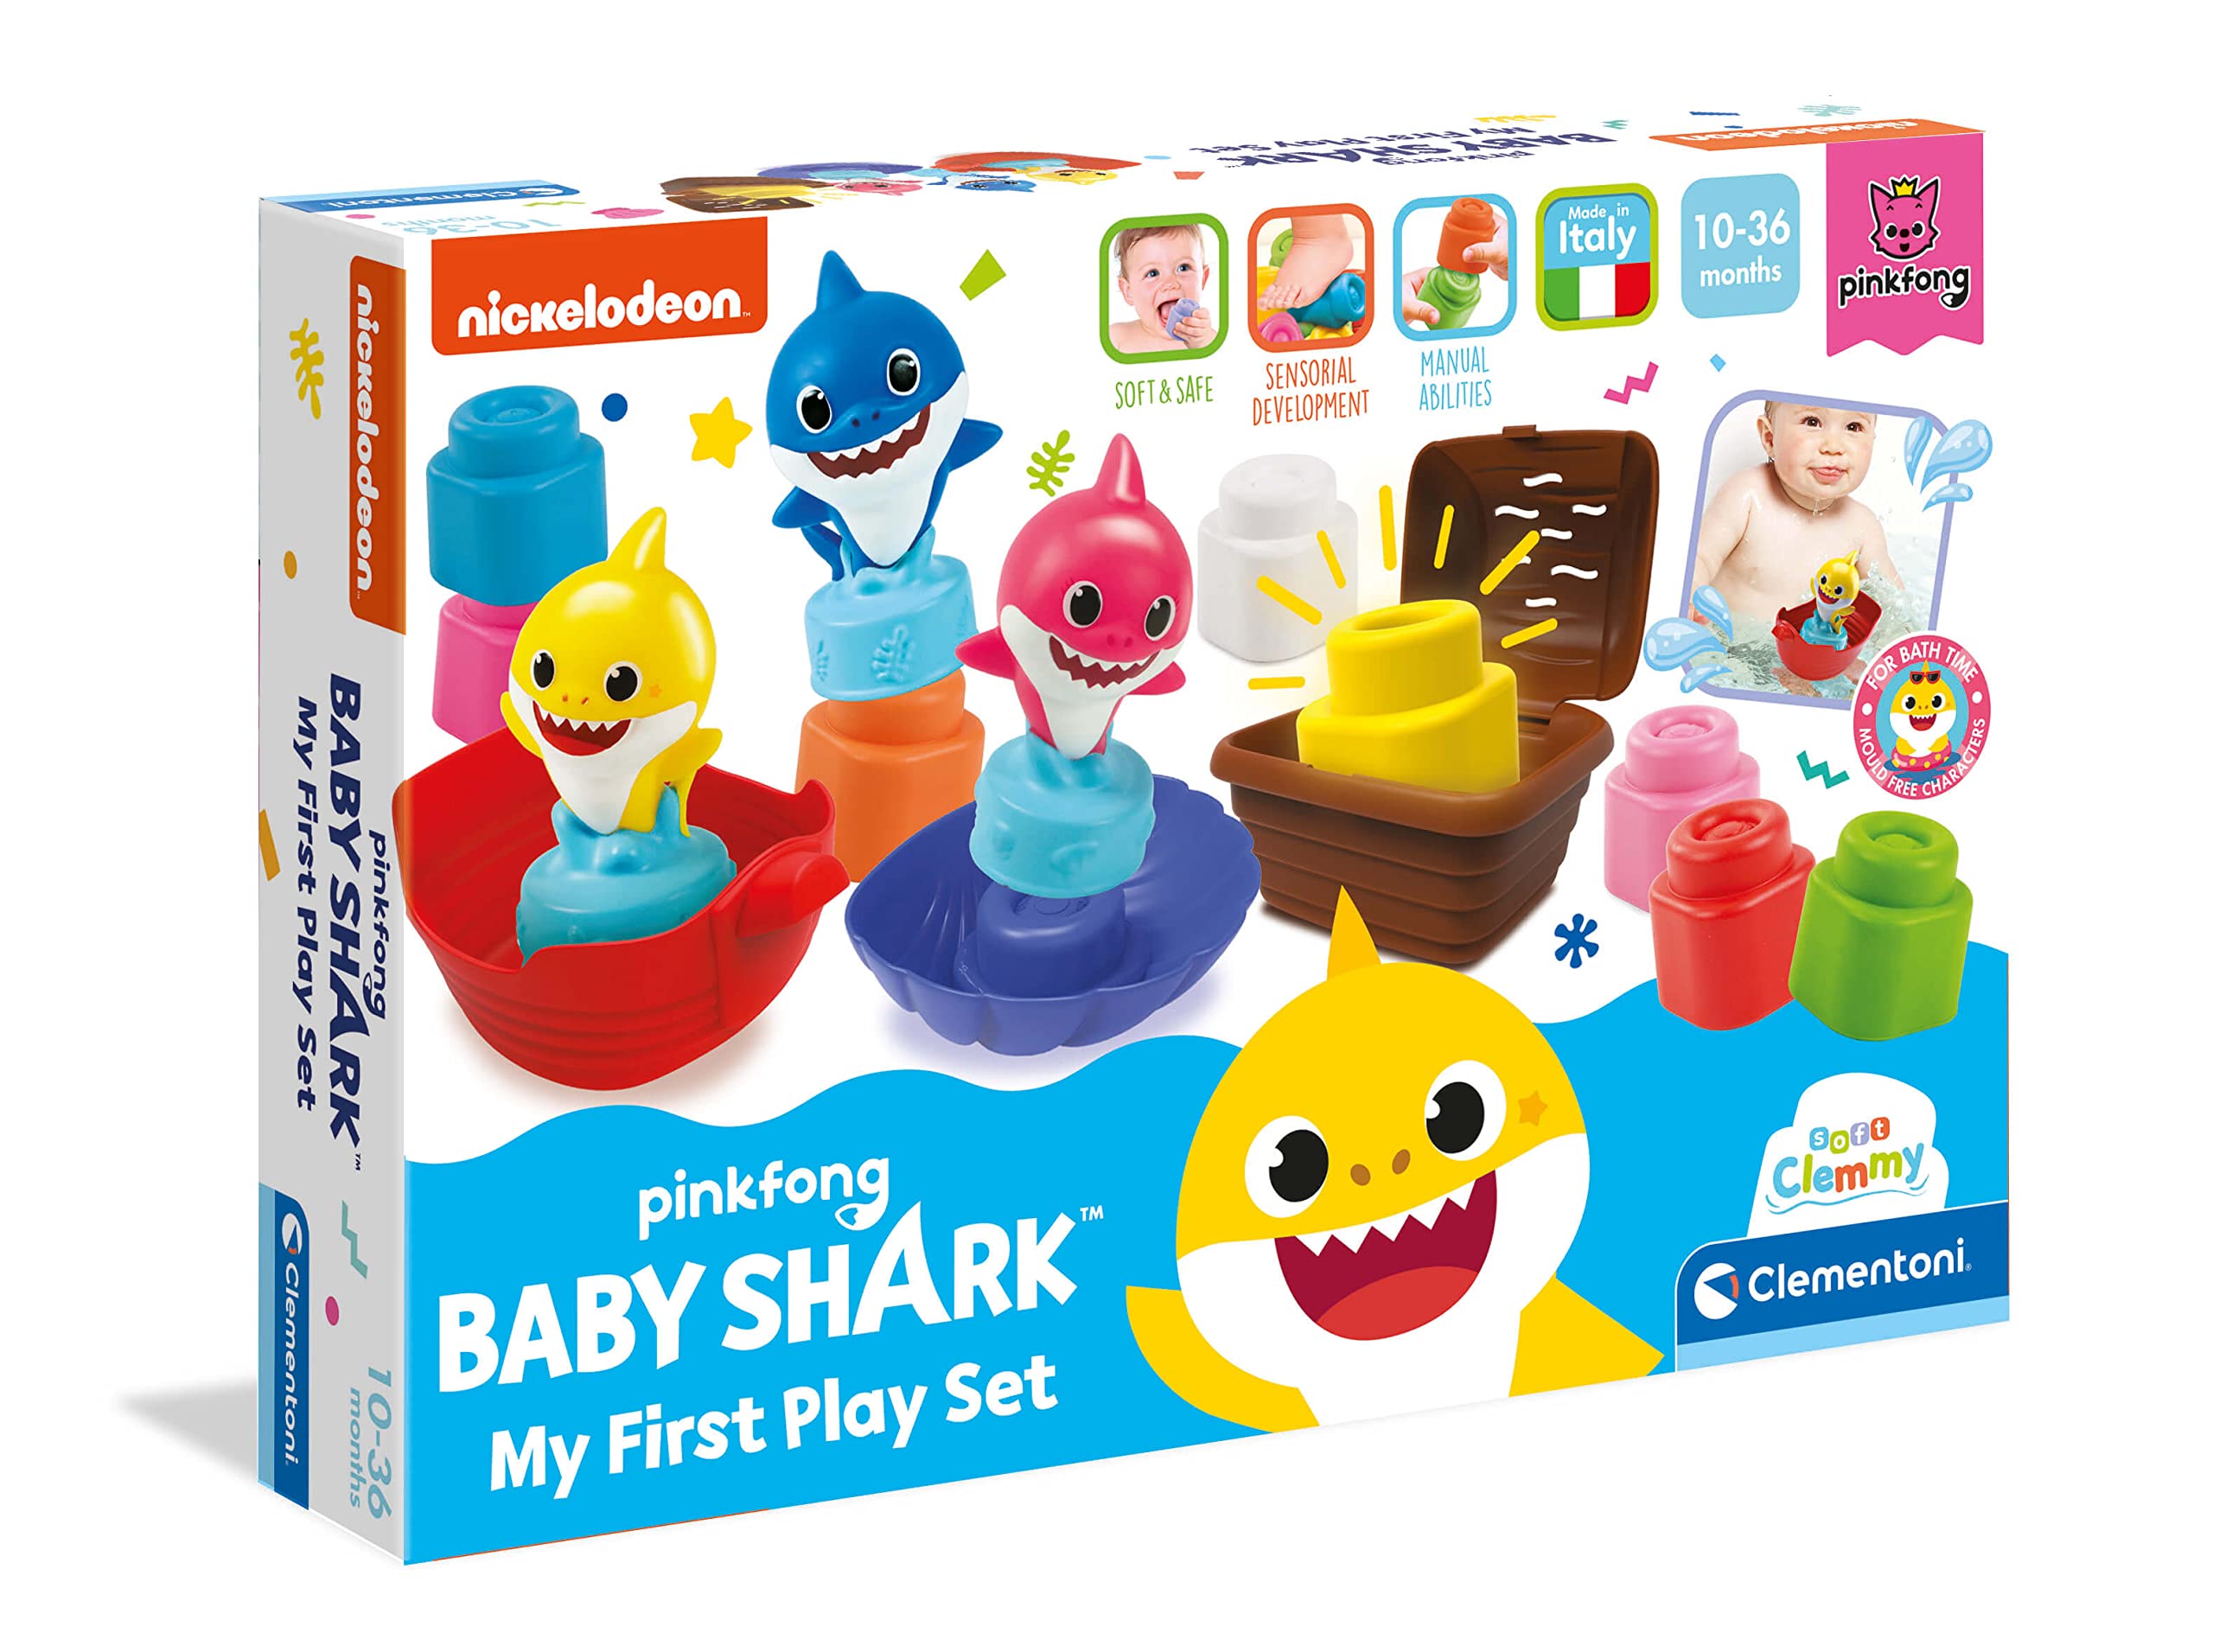 Clementoni 17426 Soft Clemmy Baby-Shark Spielset mit weichen Bausteinen, 10 Monate +, Mehrfarbig, Einheitsgröße